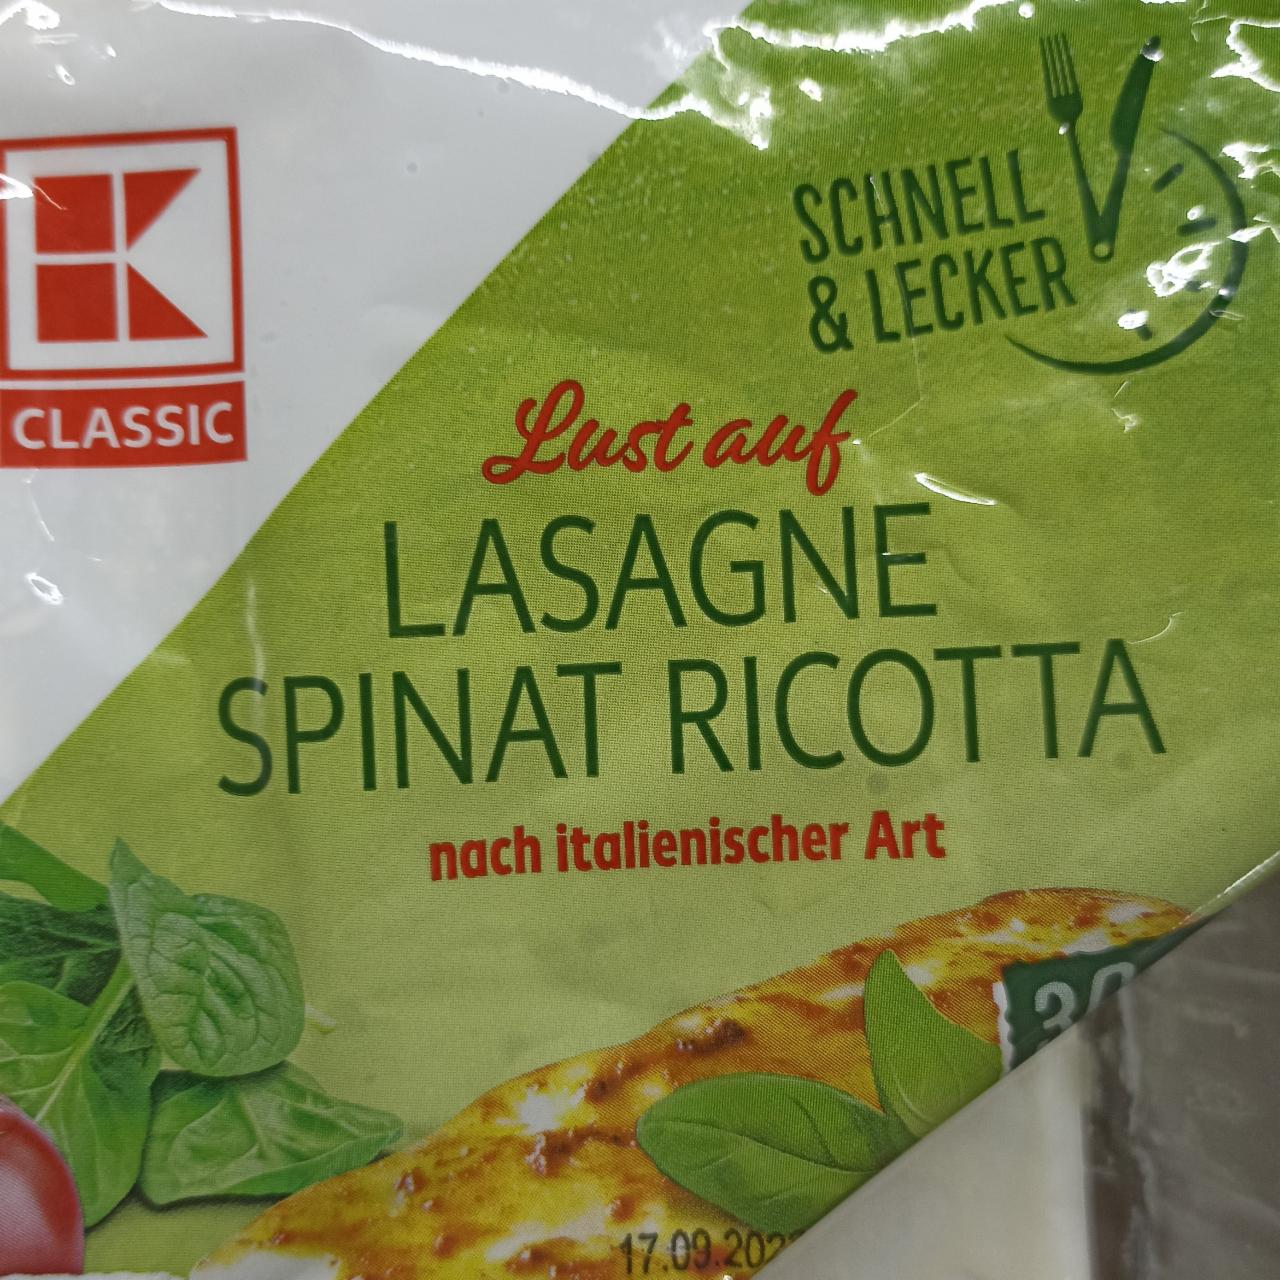 Fotografie - Lasagne Spinat ricotta nach italienischer Art K-Classic